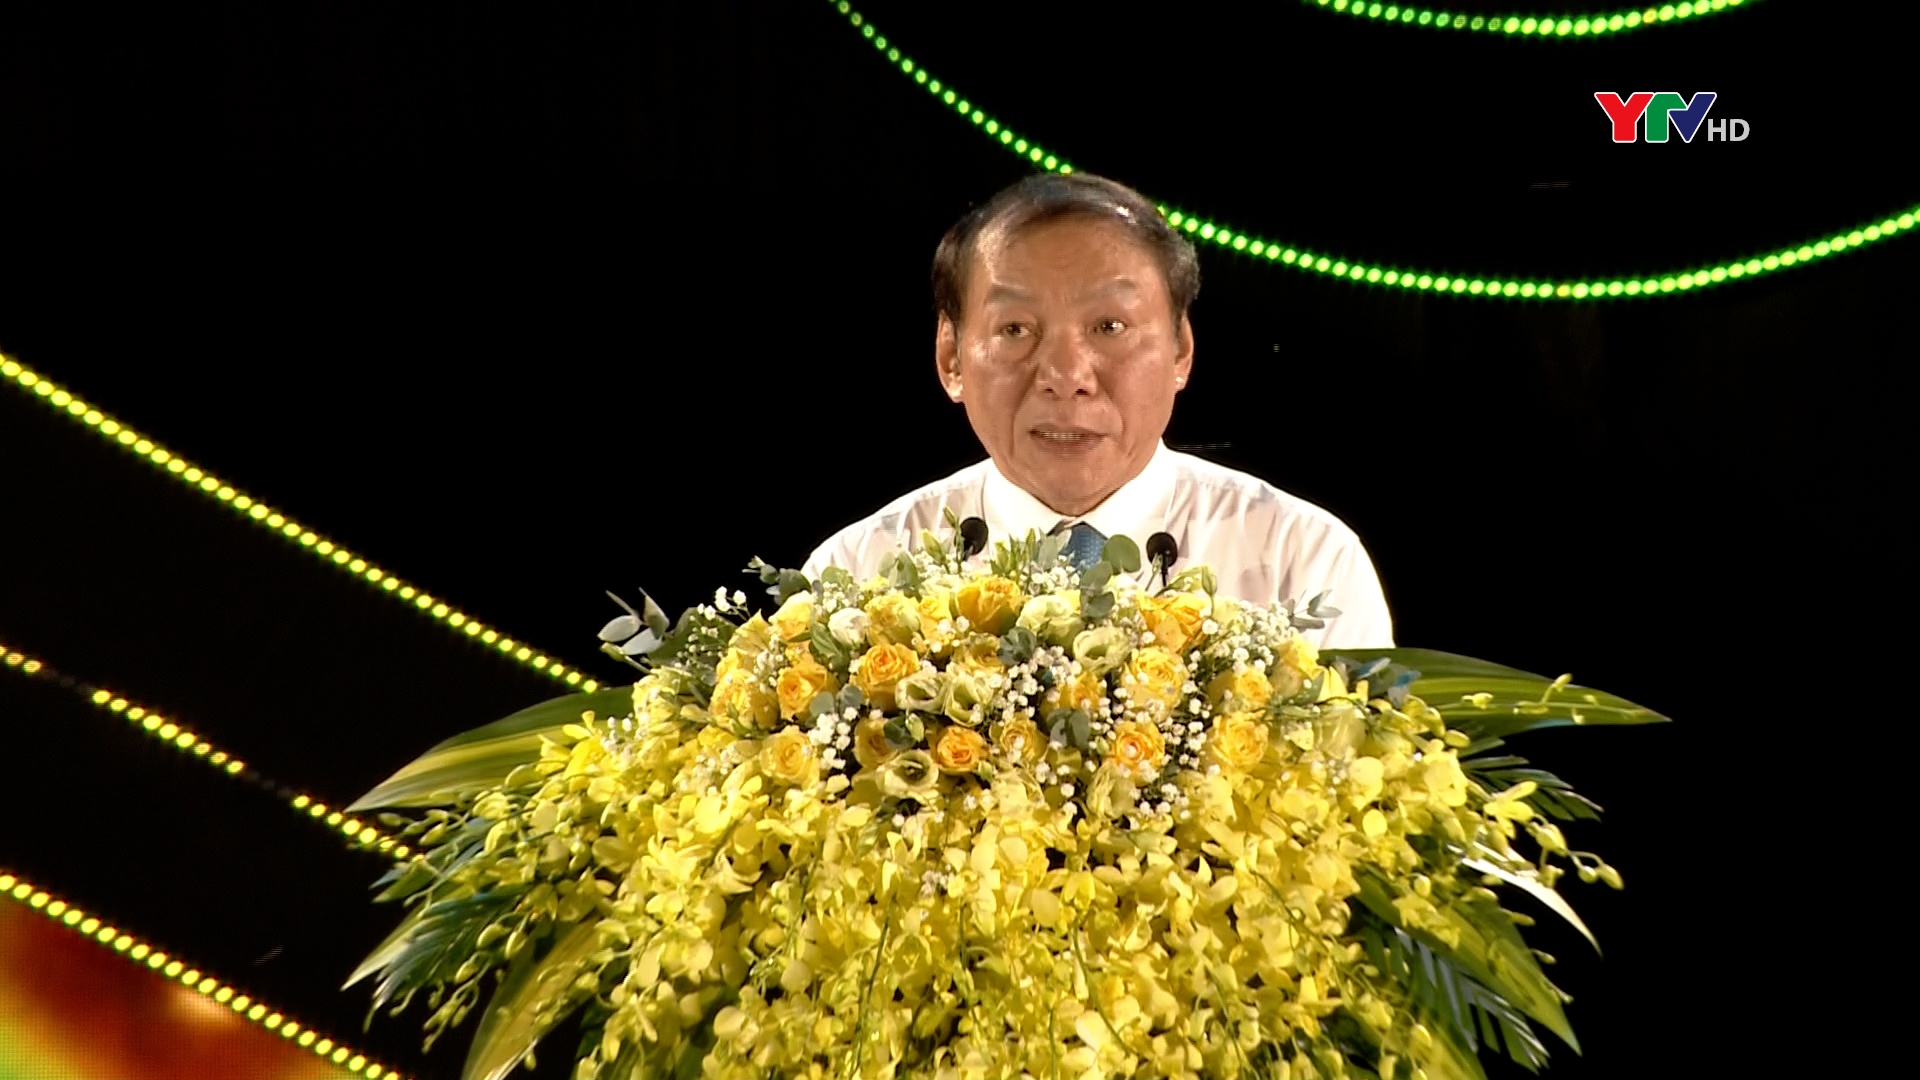 Bộ trưởng Bộ VH,TT&DL Nguyễn Văn Hùng: Mỗi người dân Yên Bái sẽ là một sứ giả văn hóa để giới thiệu, quảng bá văn hóa dân tộc mình